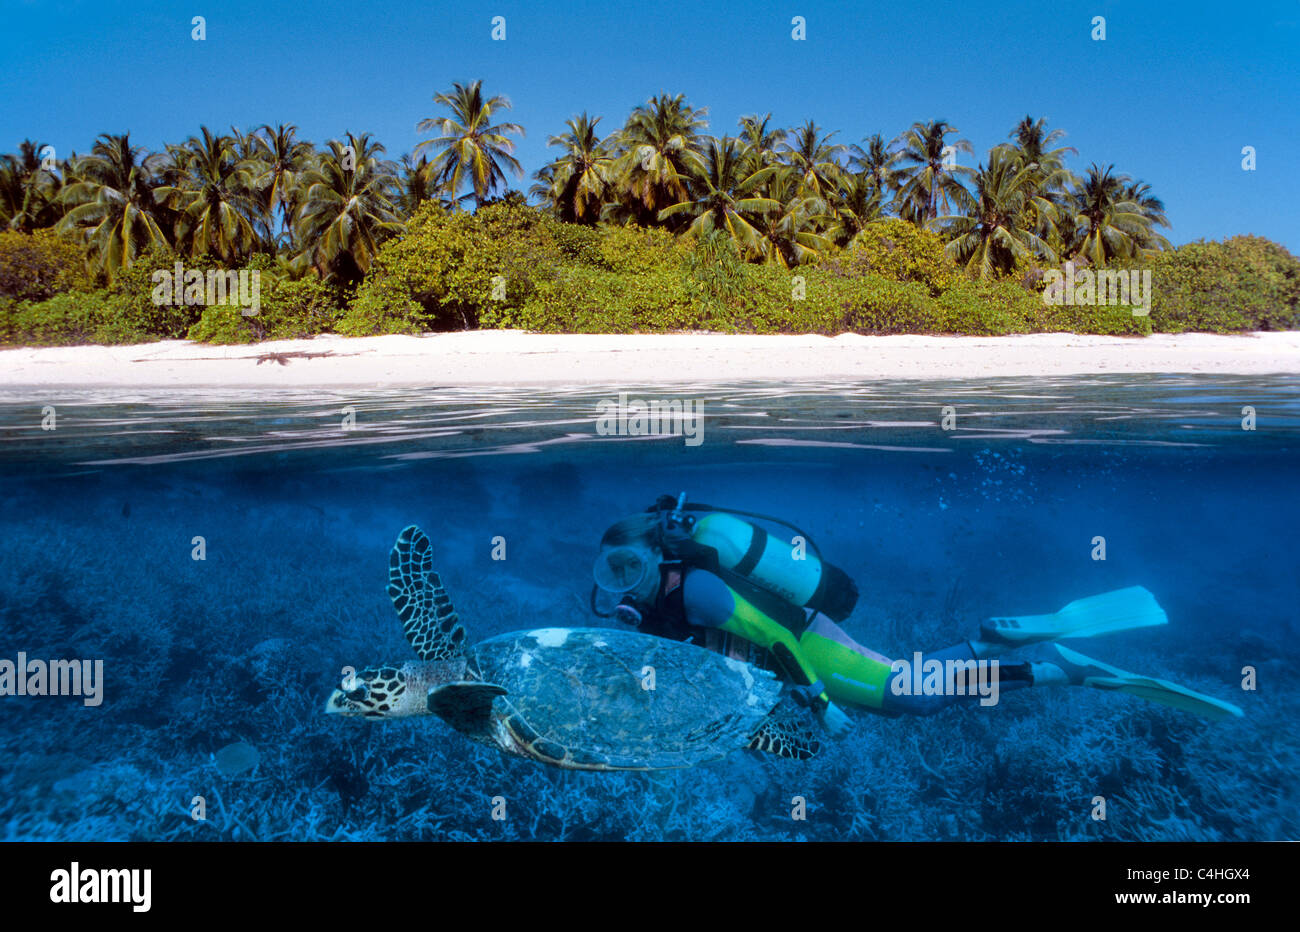 Oltre sotto acqua Immagine sdoppiata, scuba diver nuoto con mare caretta turle (Caretta caretta), isole delle Maldive, Oceano Indiano Foto Stock